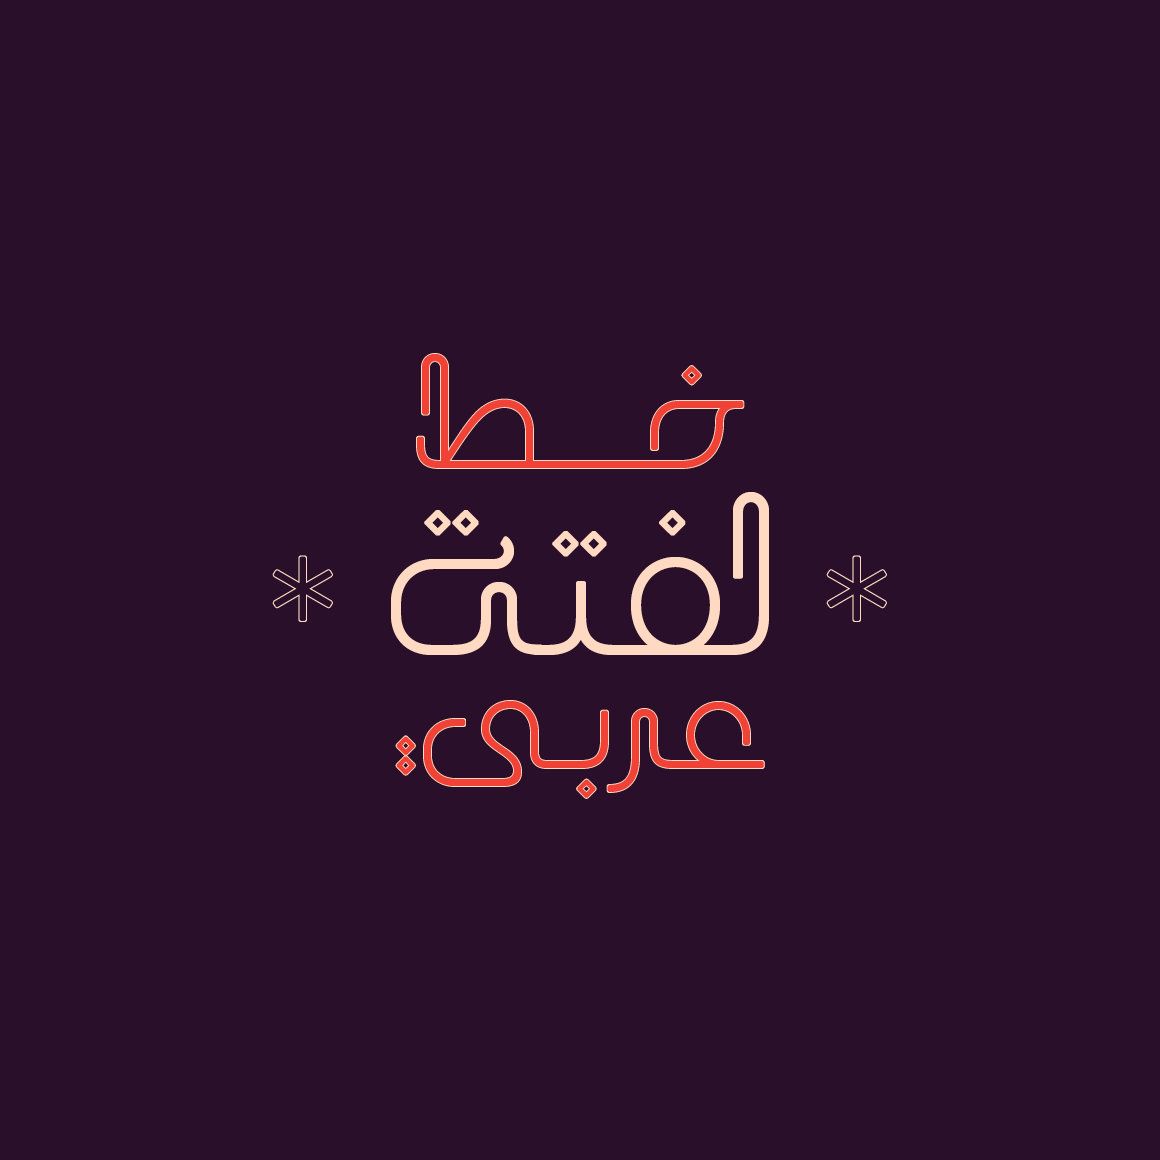 Laftah Arabic Font Arabic Calligraphy Font Islamic Etsy Arabic Calligraphy Fonts Arabic Font Font Shop